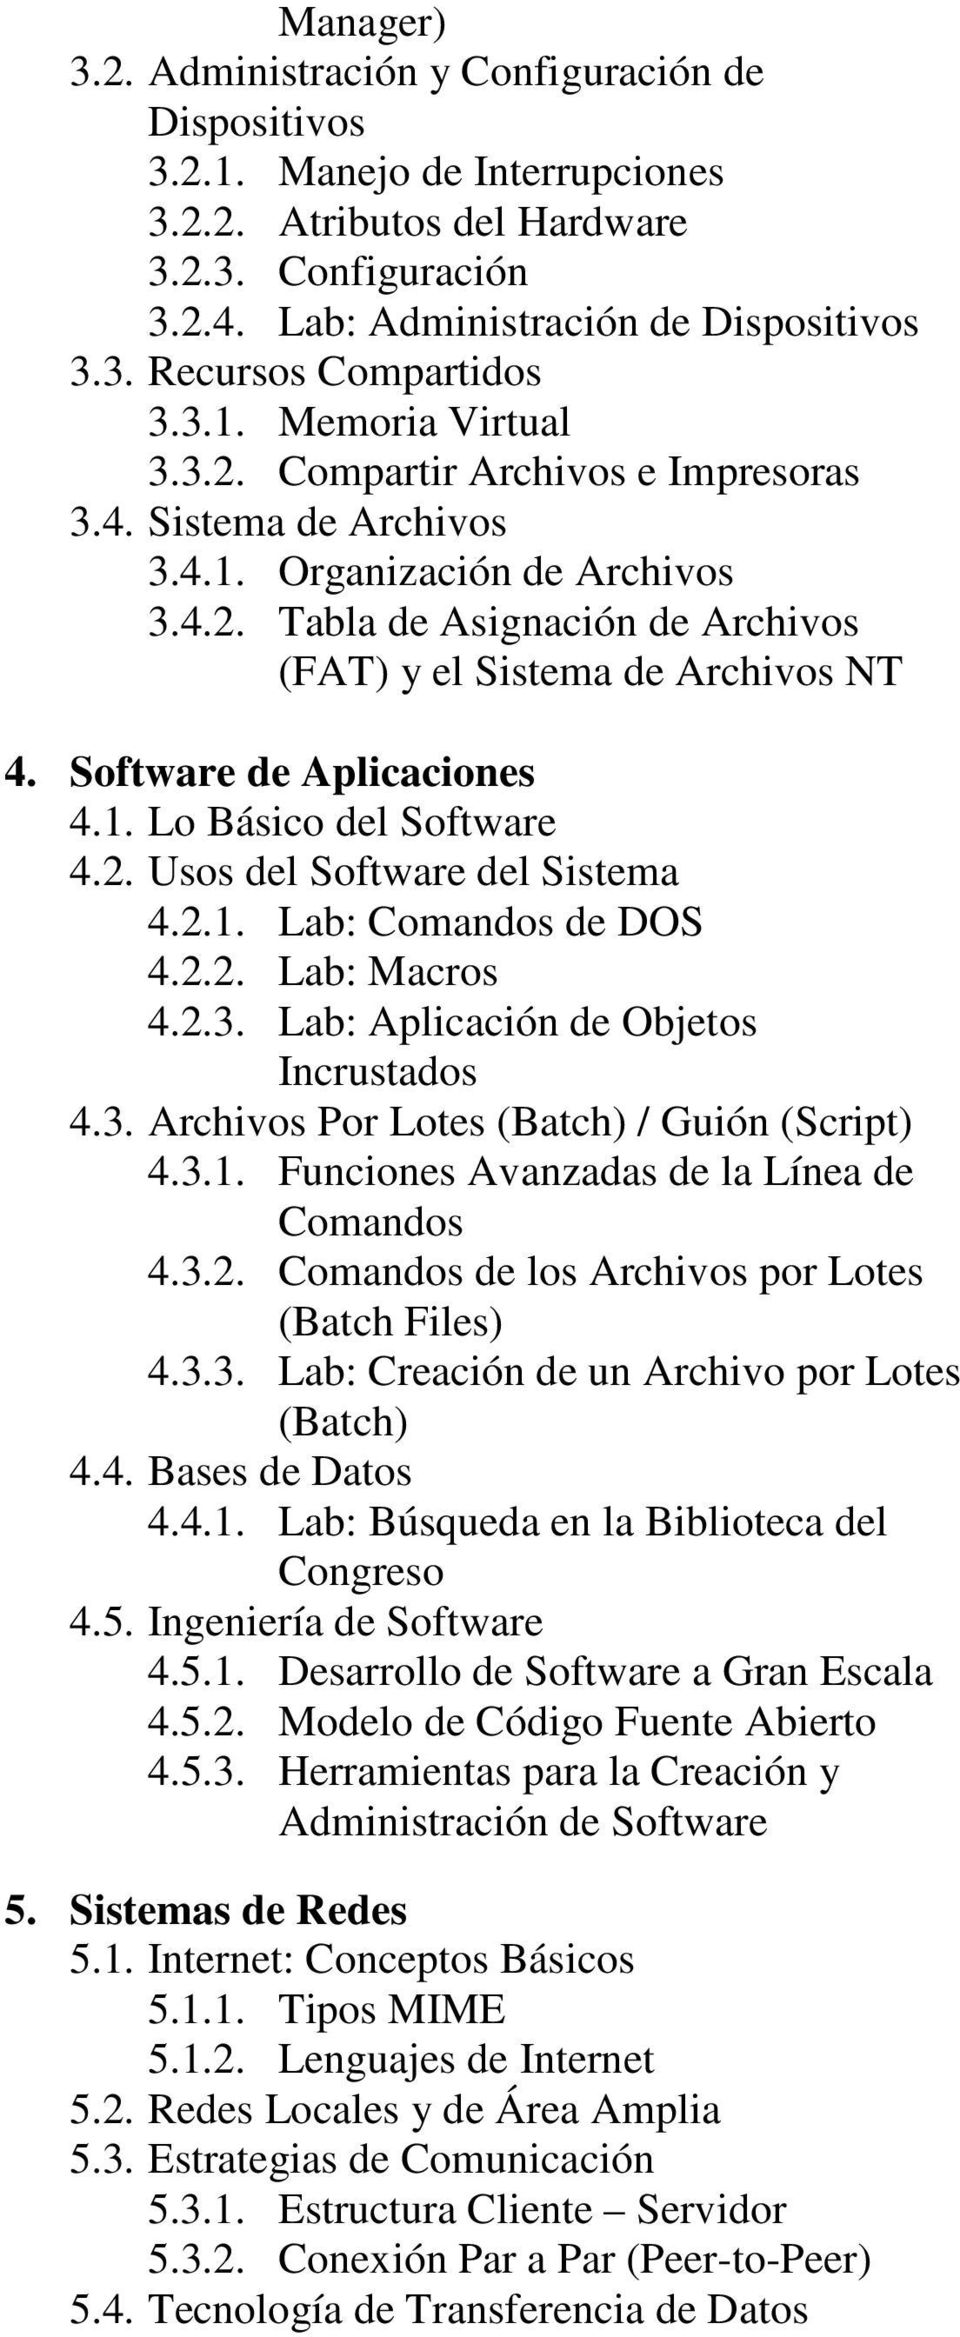 Software de Aplicaciones 4.1. Lo Básico del Software 4.2. Usos del Software del Sistema 4.2.1. Lab: Comandos de DOS 4.2.2. Lab: Macros 4.2.3. Lab: Aplicación de Objetos Incrustados 4.3. Archivos Por Lotes (Batch) / Guión (Script) 4.